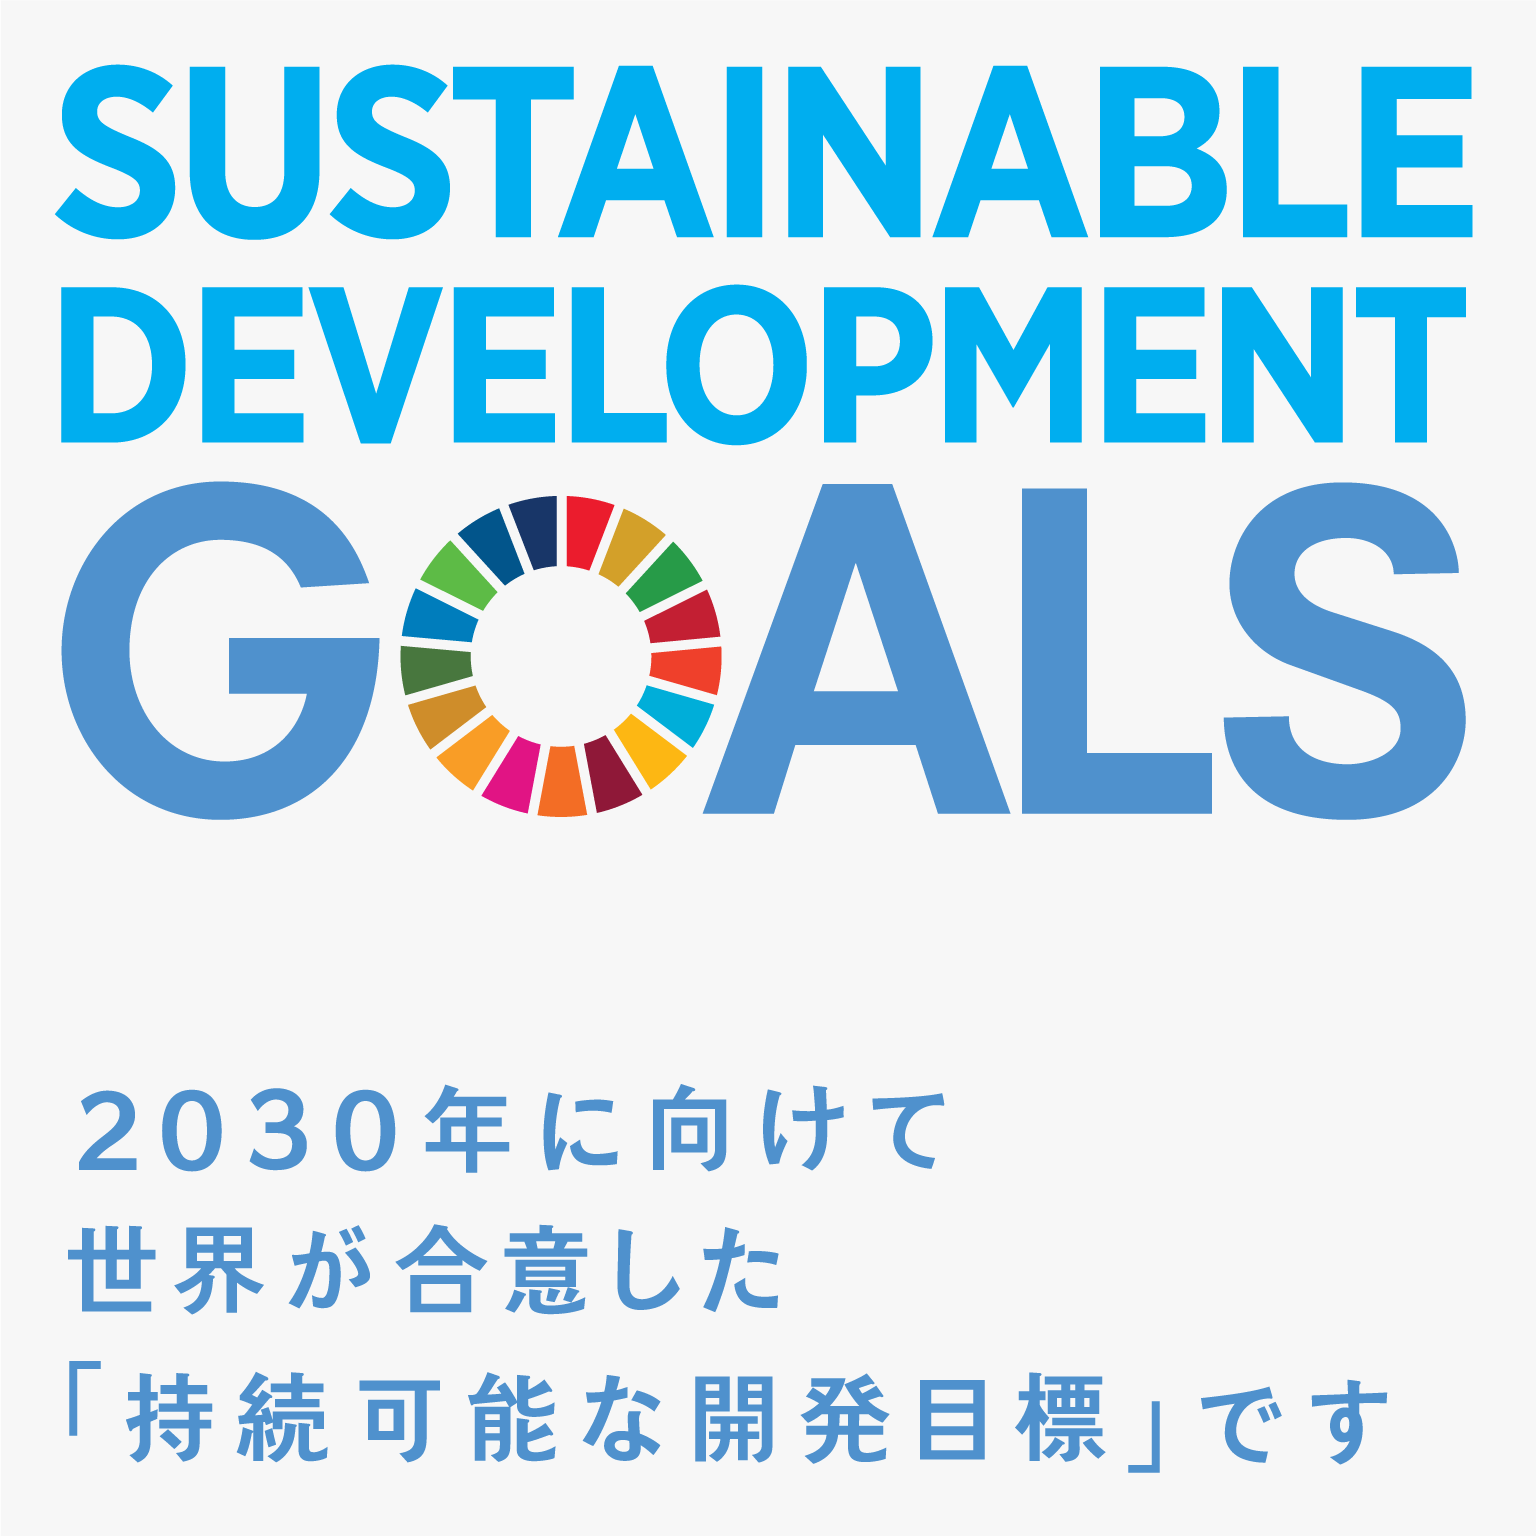 SUSTAINABLE DEVELOPMENT GOALS 2030年に向けて世界が合意した「持続可能な開発目標です」